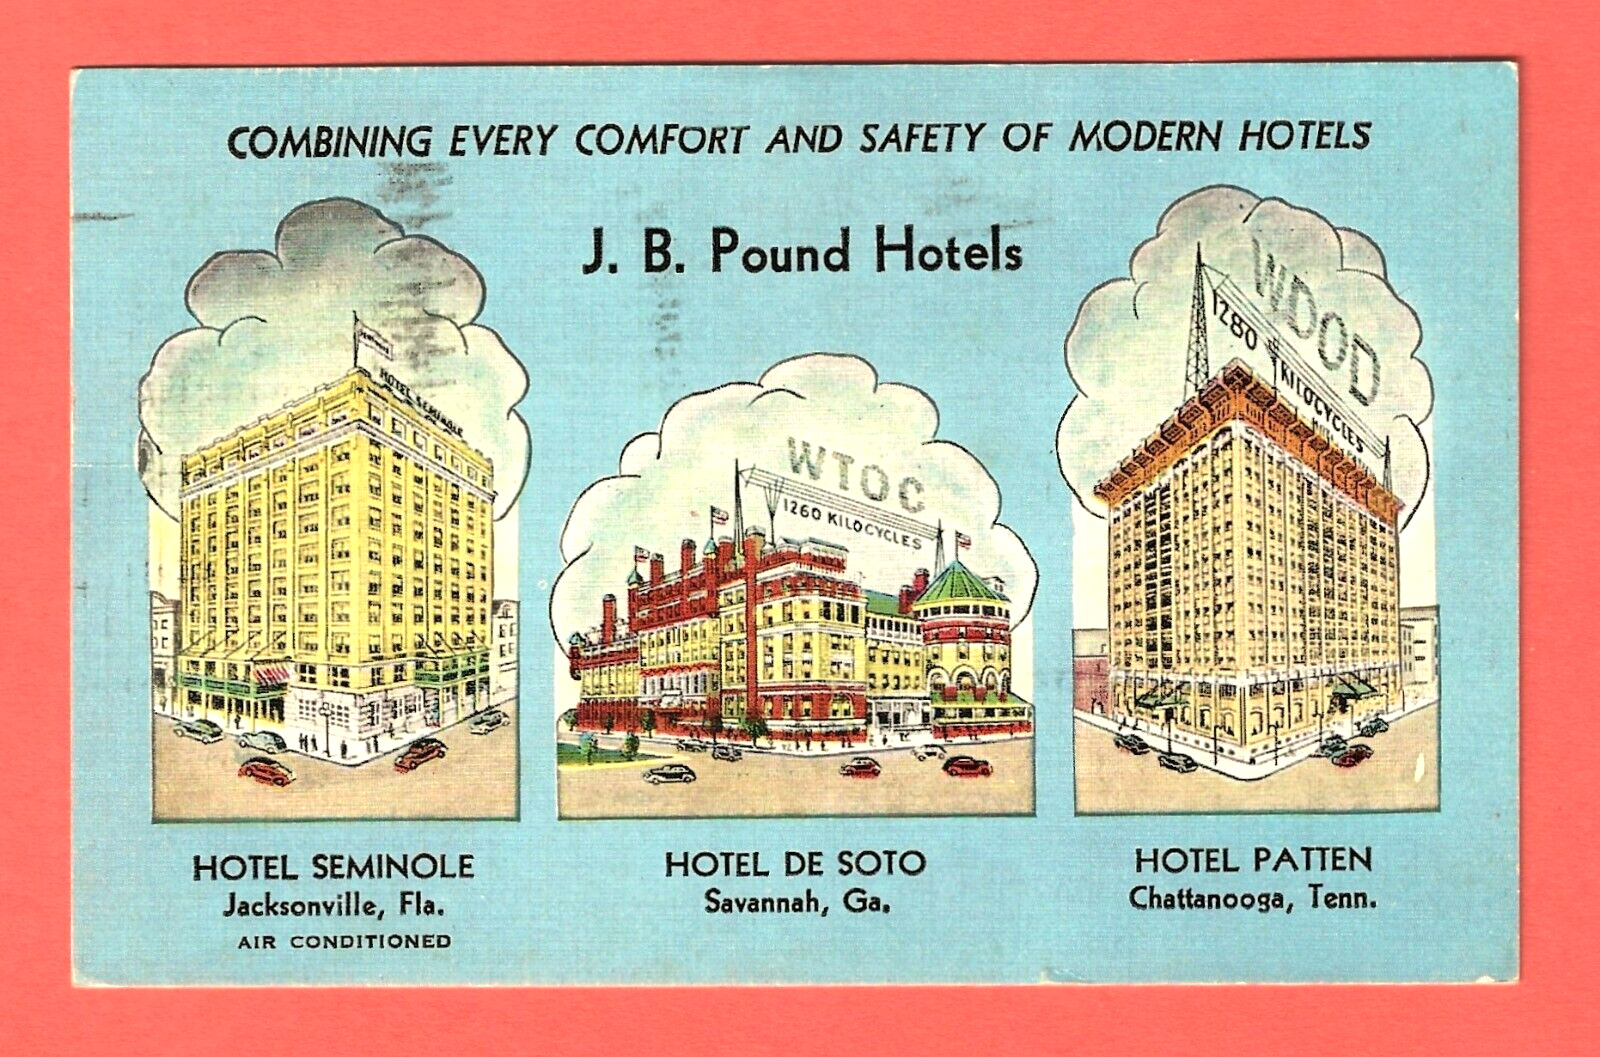 HOTEL SEMINOLE, JACKSONVILLE, FLA. – signed by J.B. Pound – Razed 1974 - 1930s